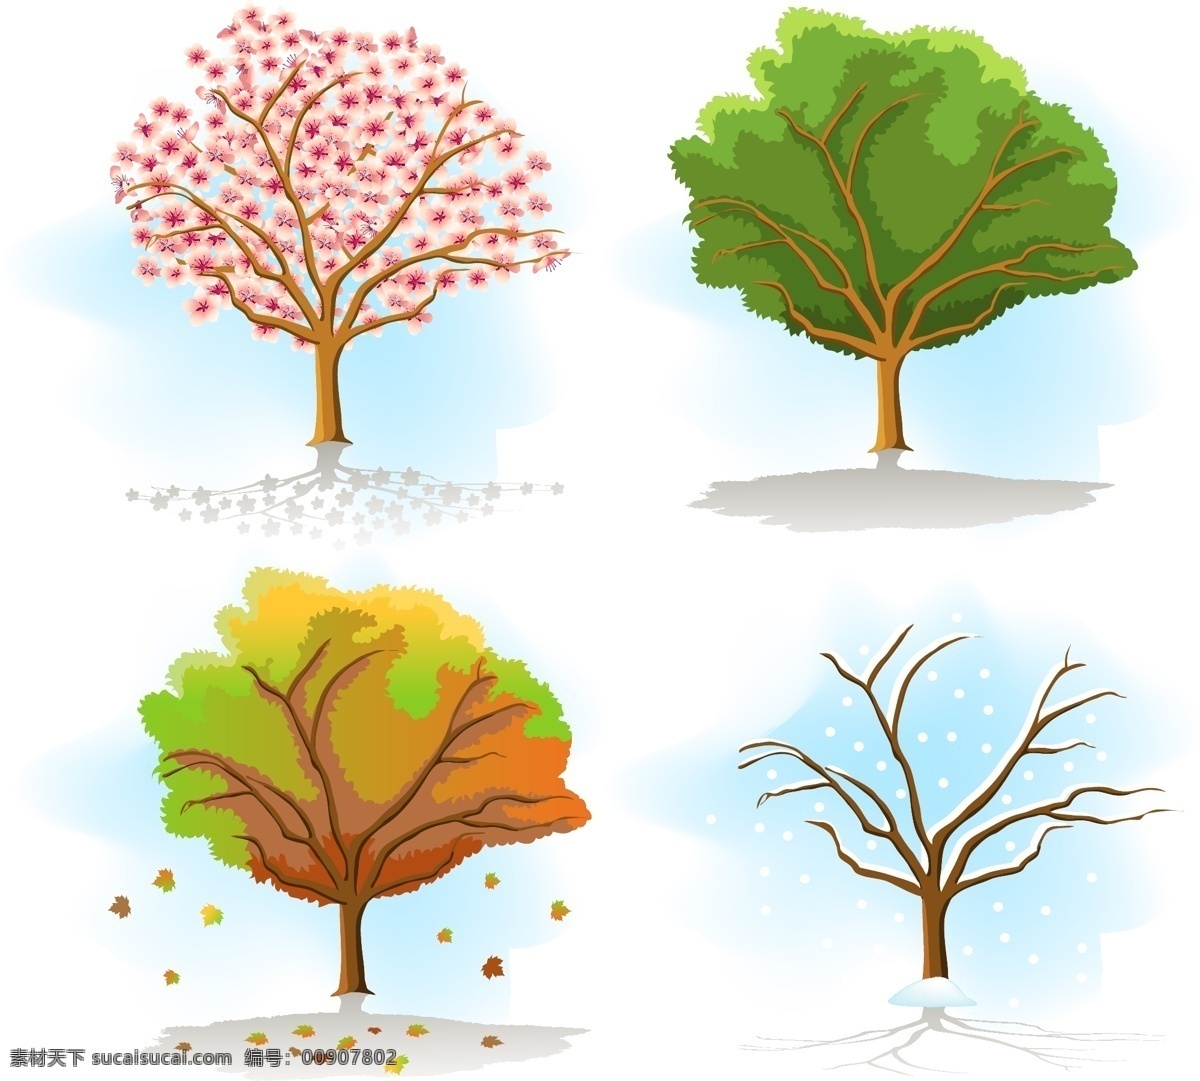 四季 植物 主题 矢量 eps格式 彩虹 花 雷电 矢量素材 树木 太阳 土壤 叶子 植物矢量 自然 矢量图 其他矢量图